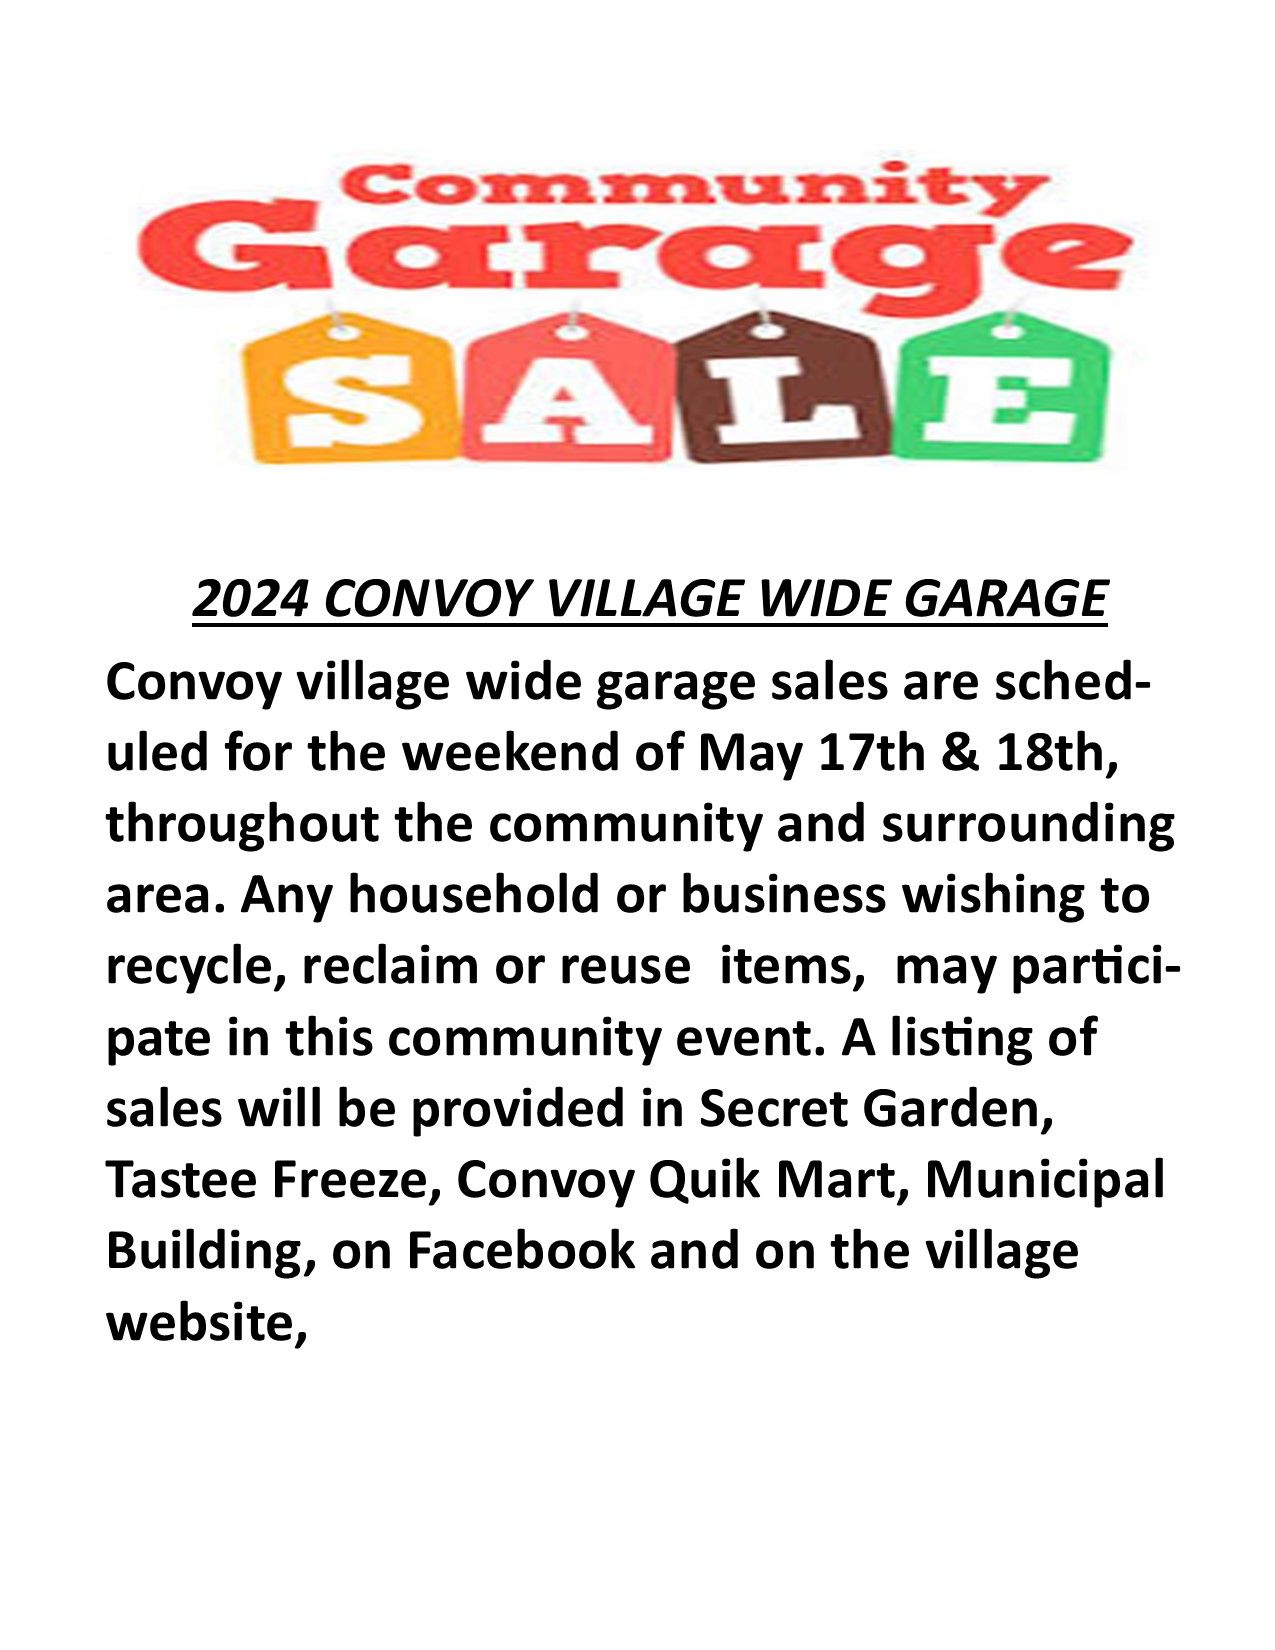 Convoy Village Garage Sales